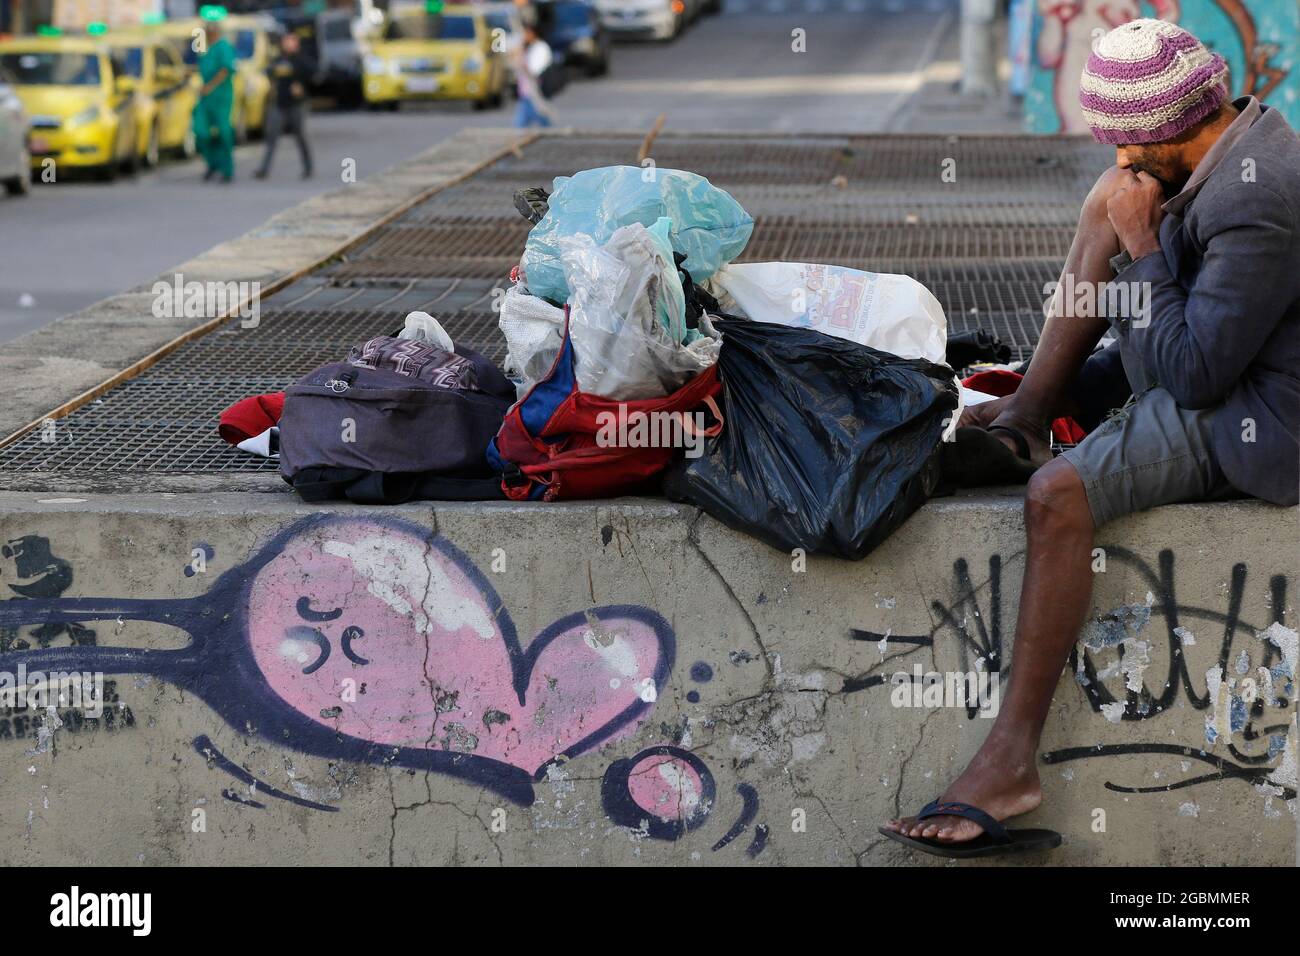 Homme sans abri, mendiant vivant sur un trottoir pendant la crise économique au centre-ville, à la recherche d'aide, faim. Pauvreté situation vulnérable, questions sociales en lat Banque D'Images